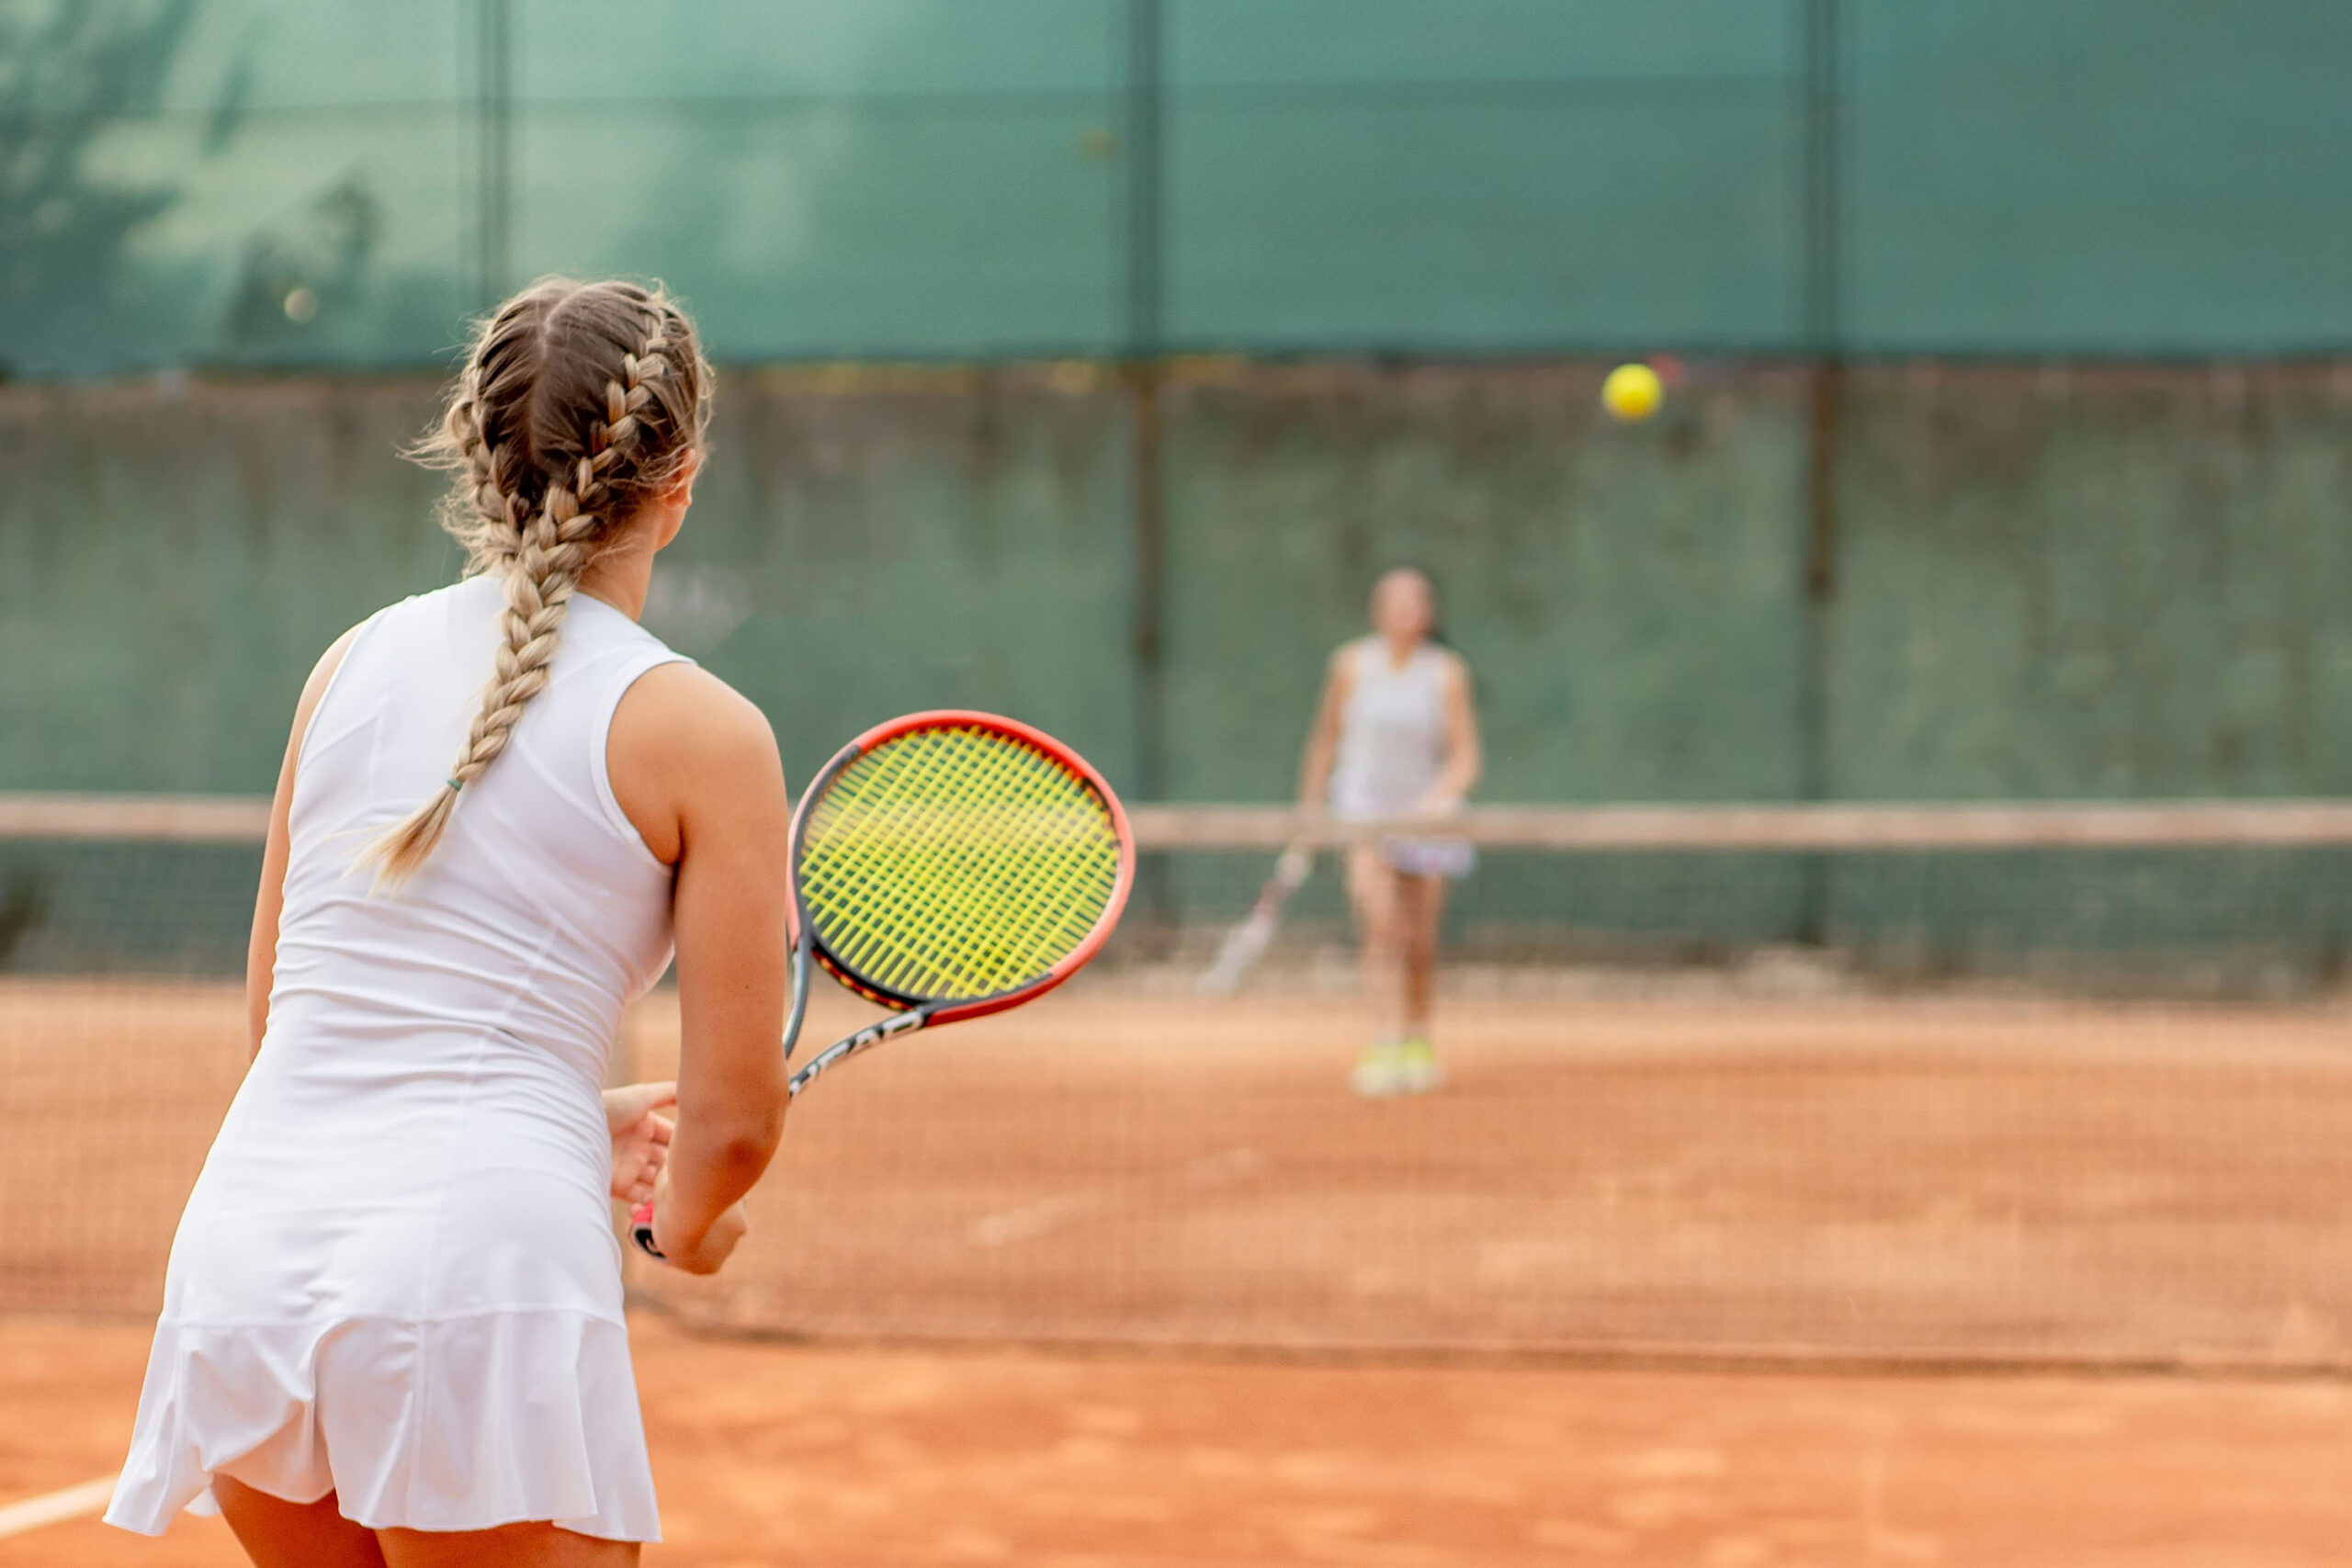 She plays tennis well. Девушка с русыми волосами на теннисном корте. Стиль с теннисной юбкой. Девочка блондинка теннис. Под юбкой на теннис корте.